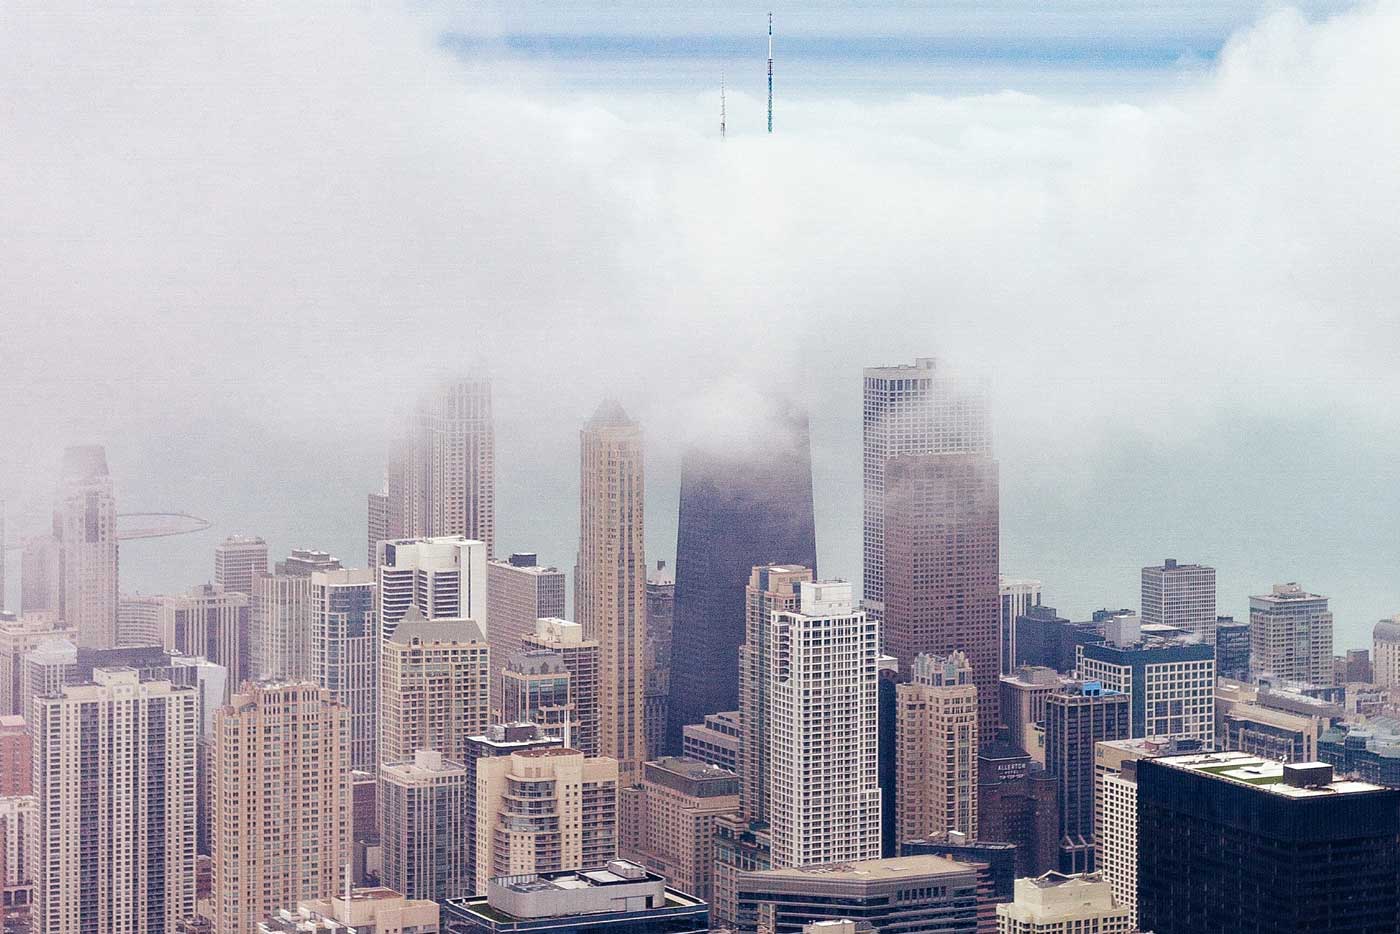 Chicago skyline in the fog.